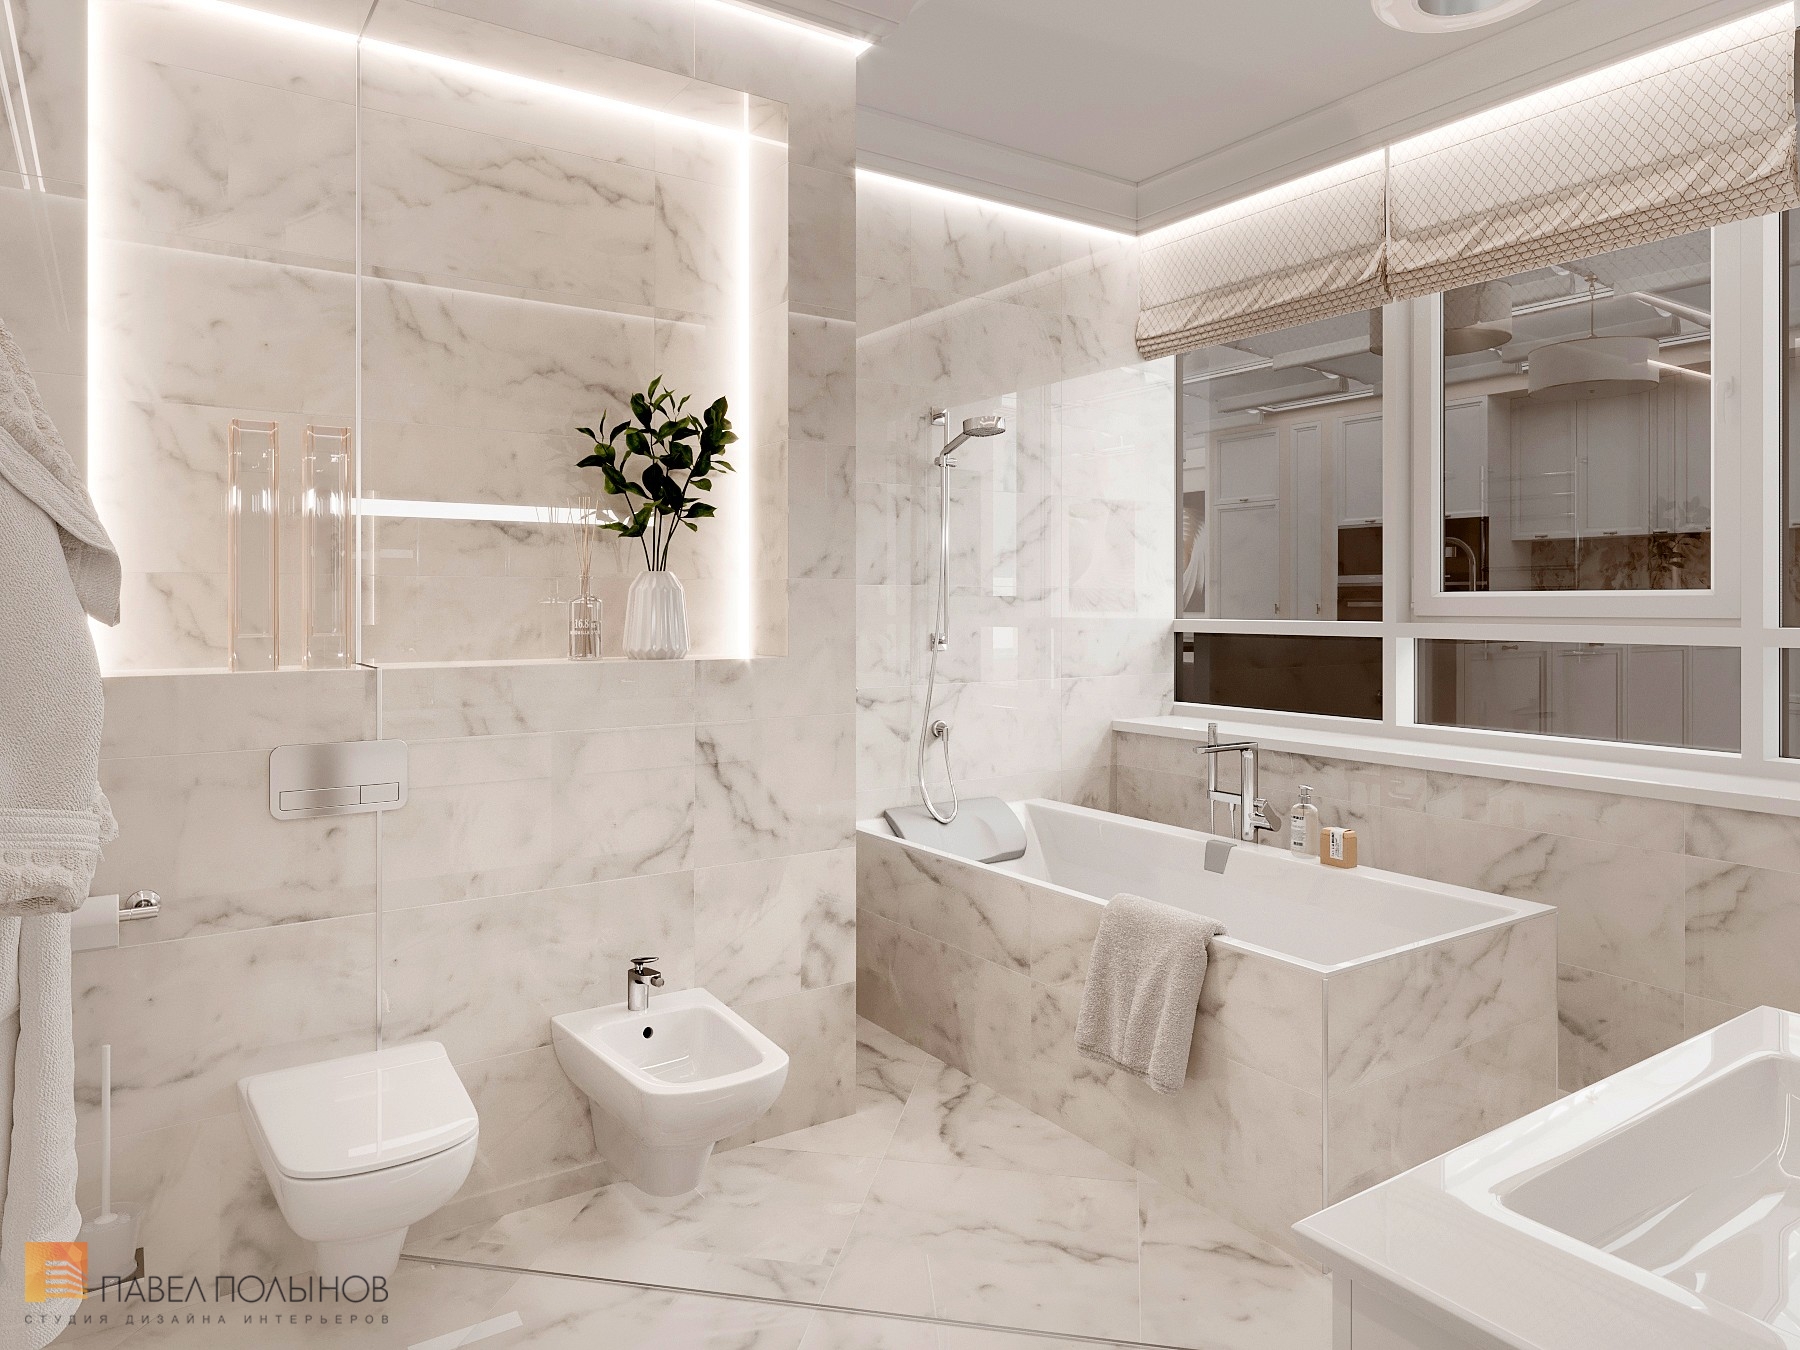 Фото дизайн интерьера ванной комнаты из проекта «Интерьер квартиры 200 кв.м. в стиле Ар-деко, ЖК «Граф Орлов»»